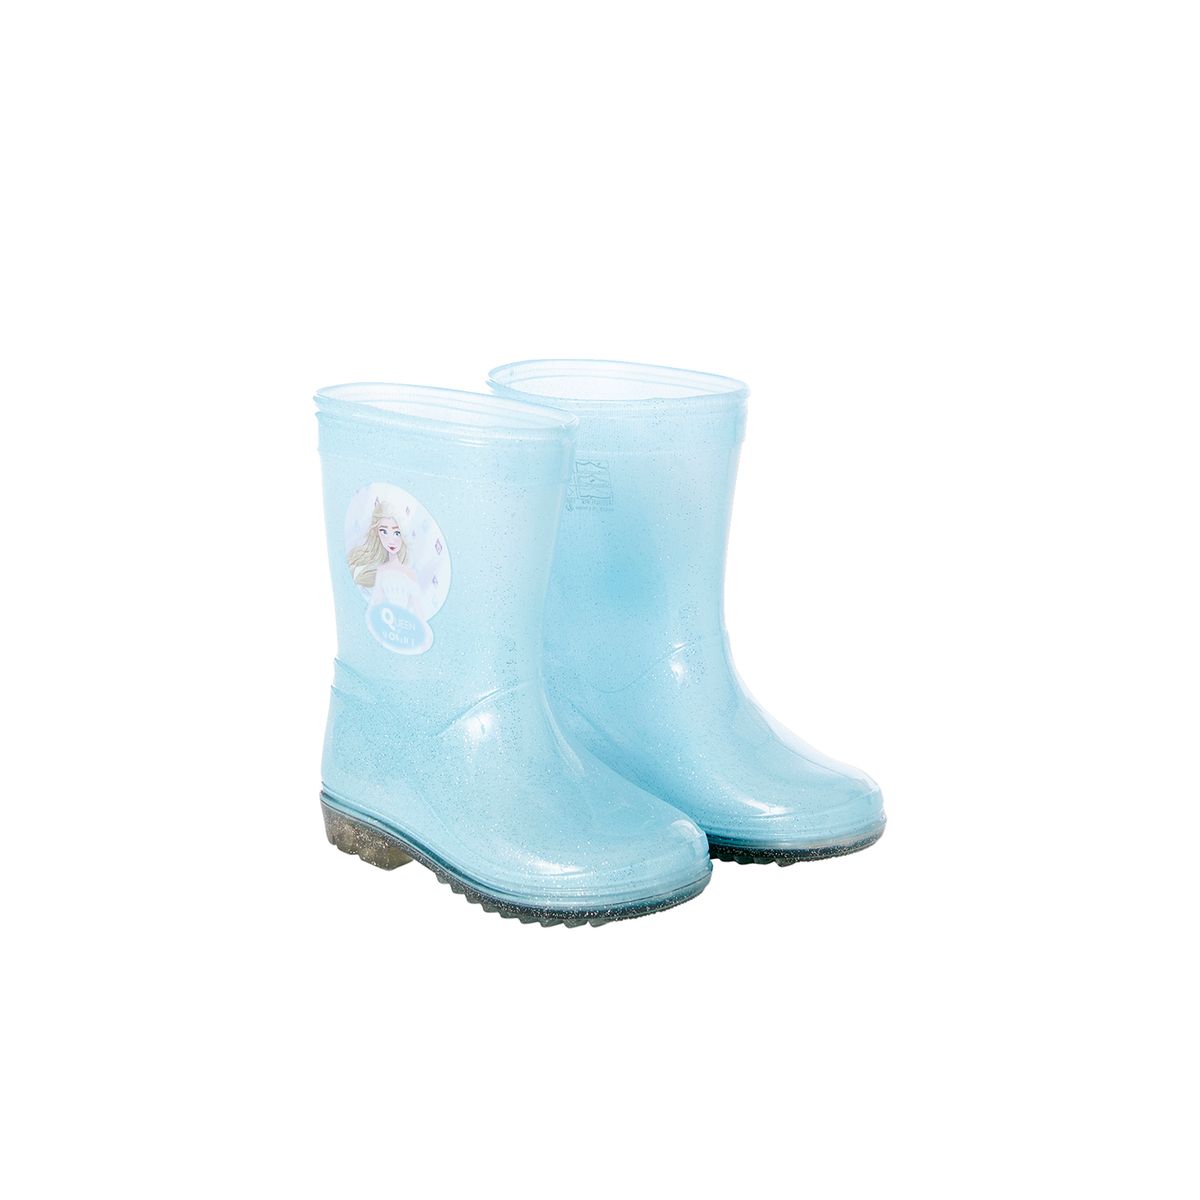 bottes pluie pour femme rayées bleues et fleurs